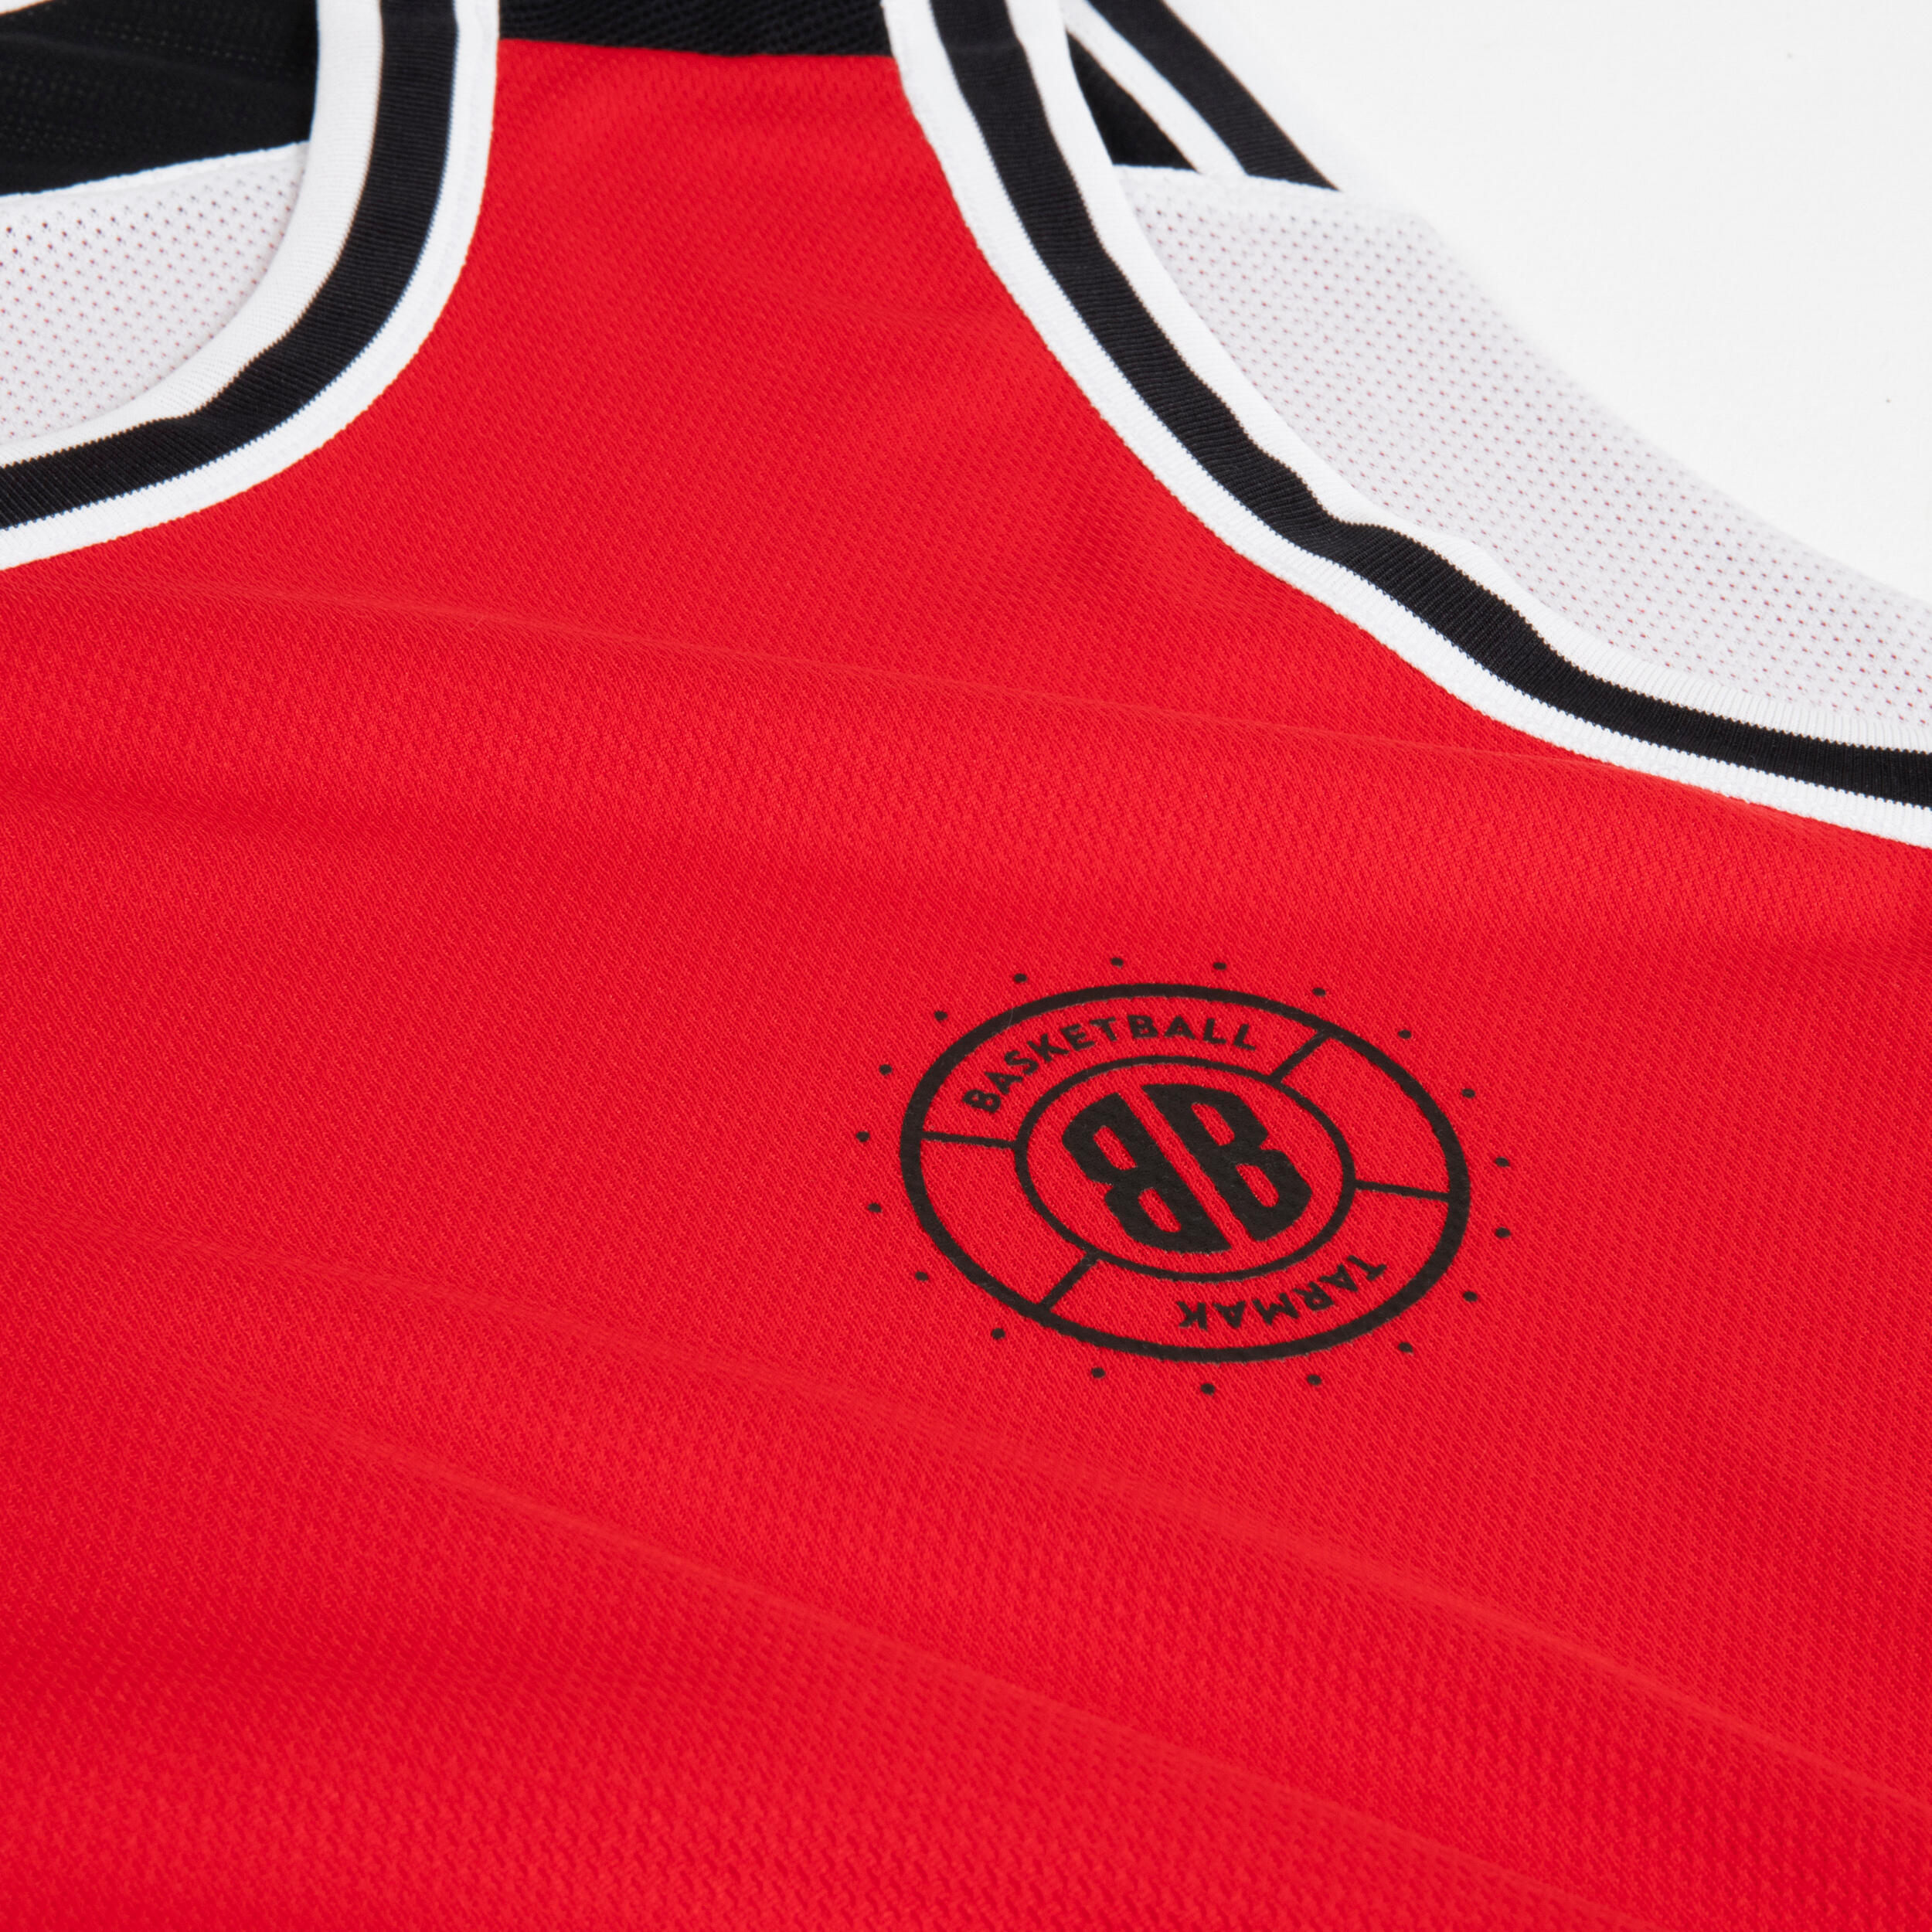 Men's/Women's Reversible Sleeveless Basketball Jersey T500 - White/Red 10/13